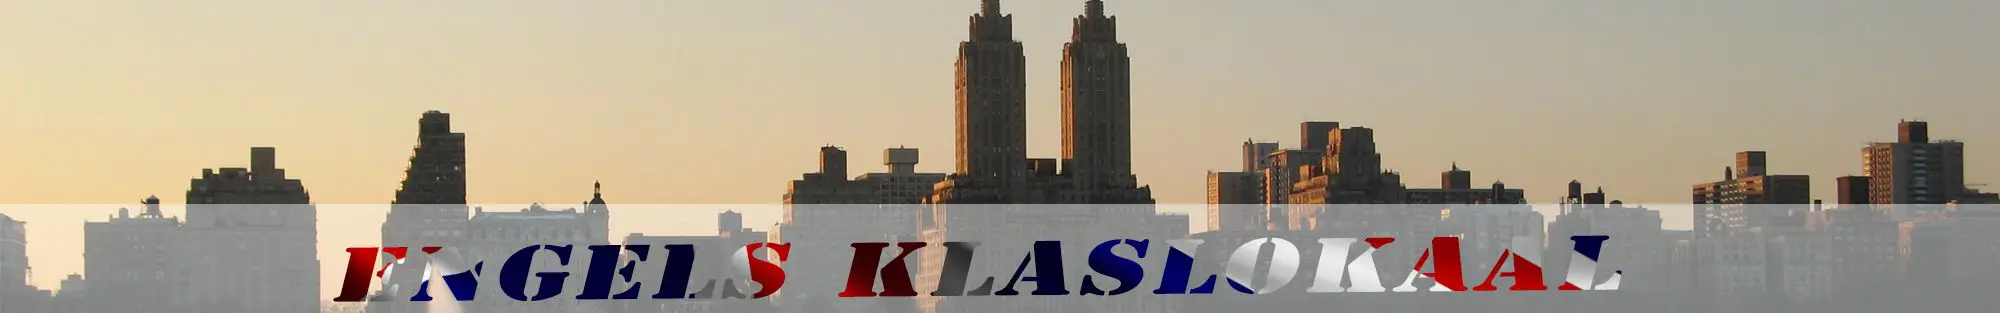 skyline van new york header engels klaslokaal